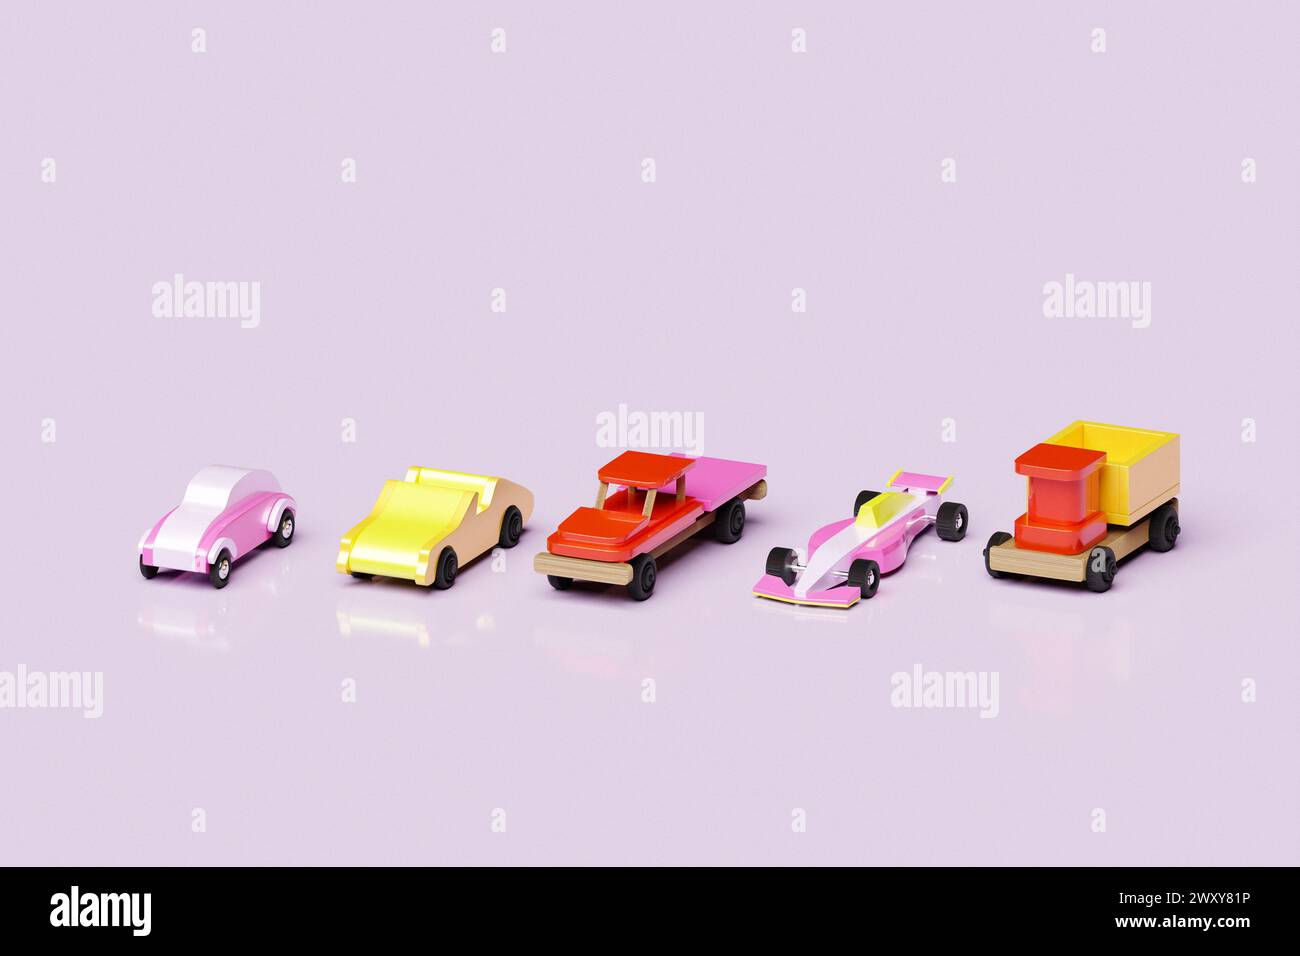 ilustración 3d modelos coloridos de coches para niños de varios tipos de carreras, camiones, camionetas Foto de stock